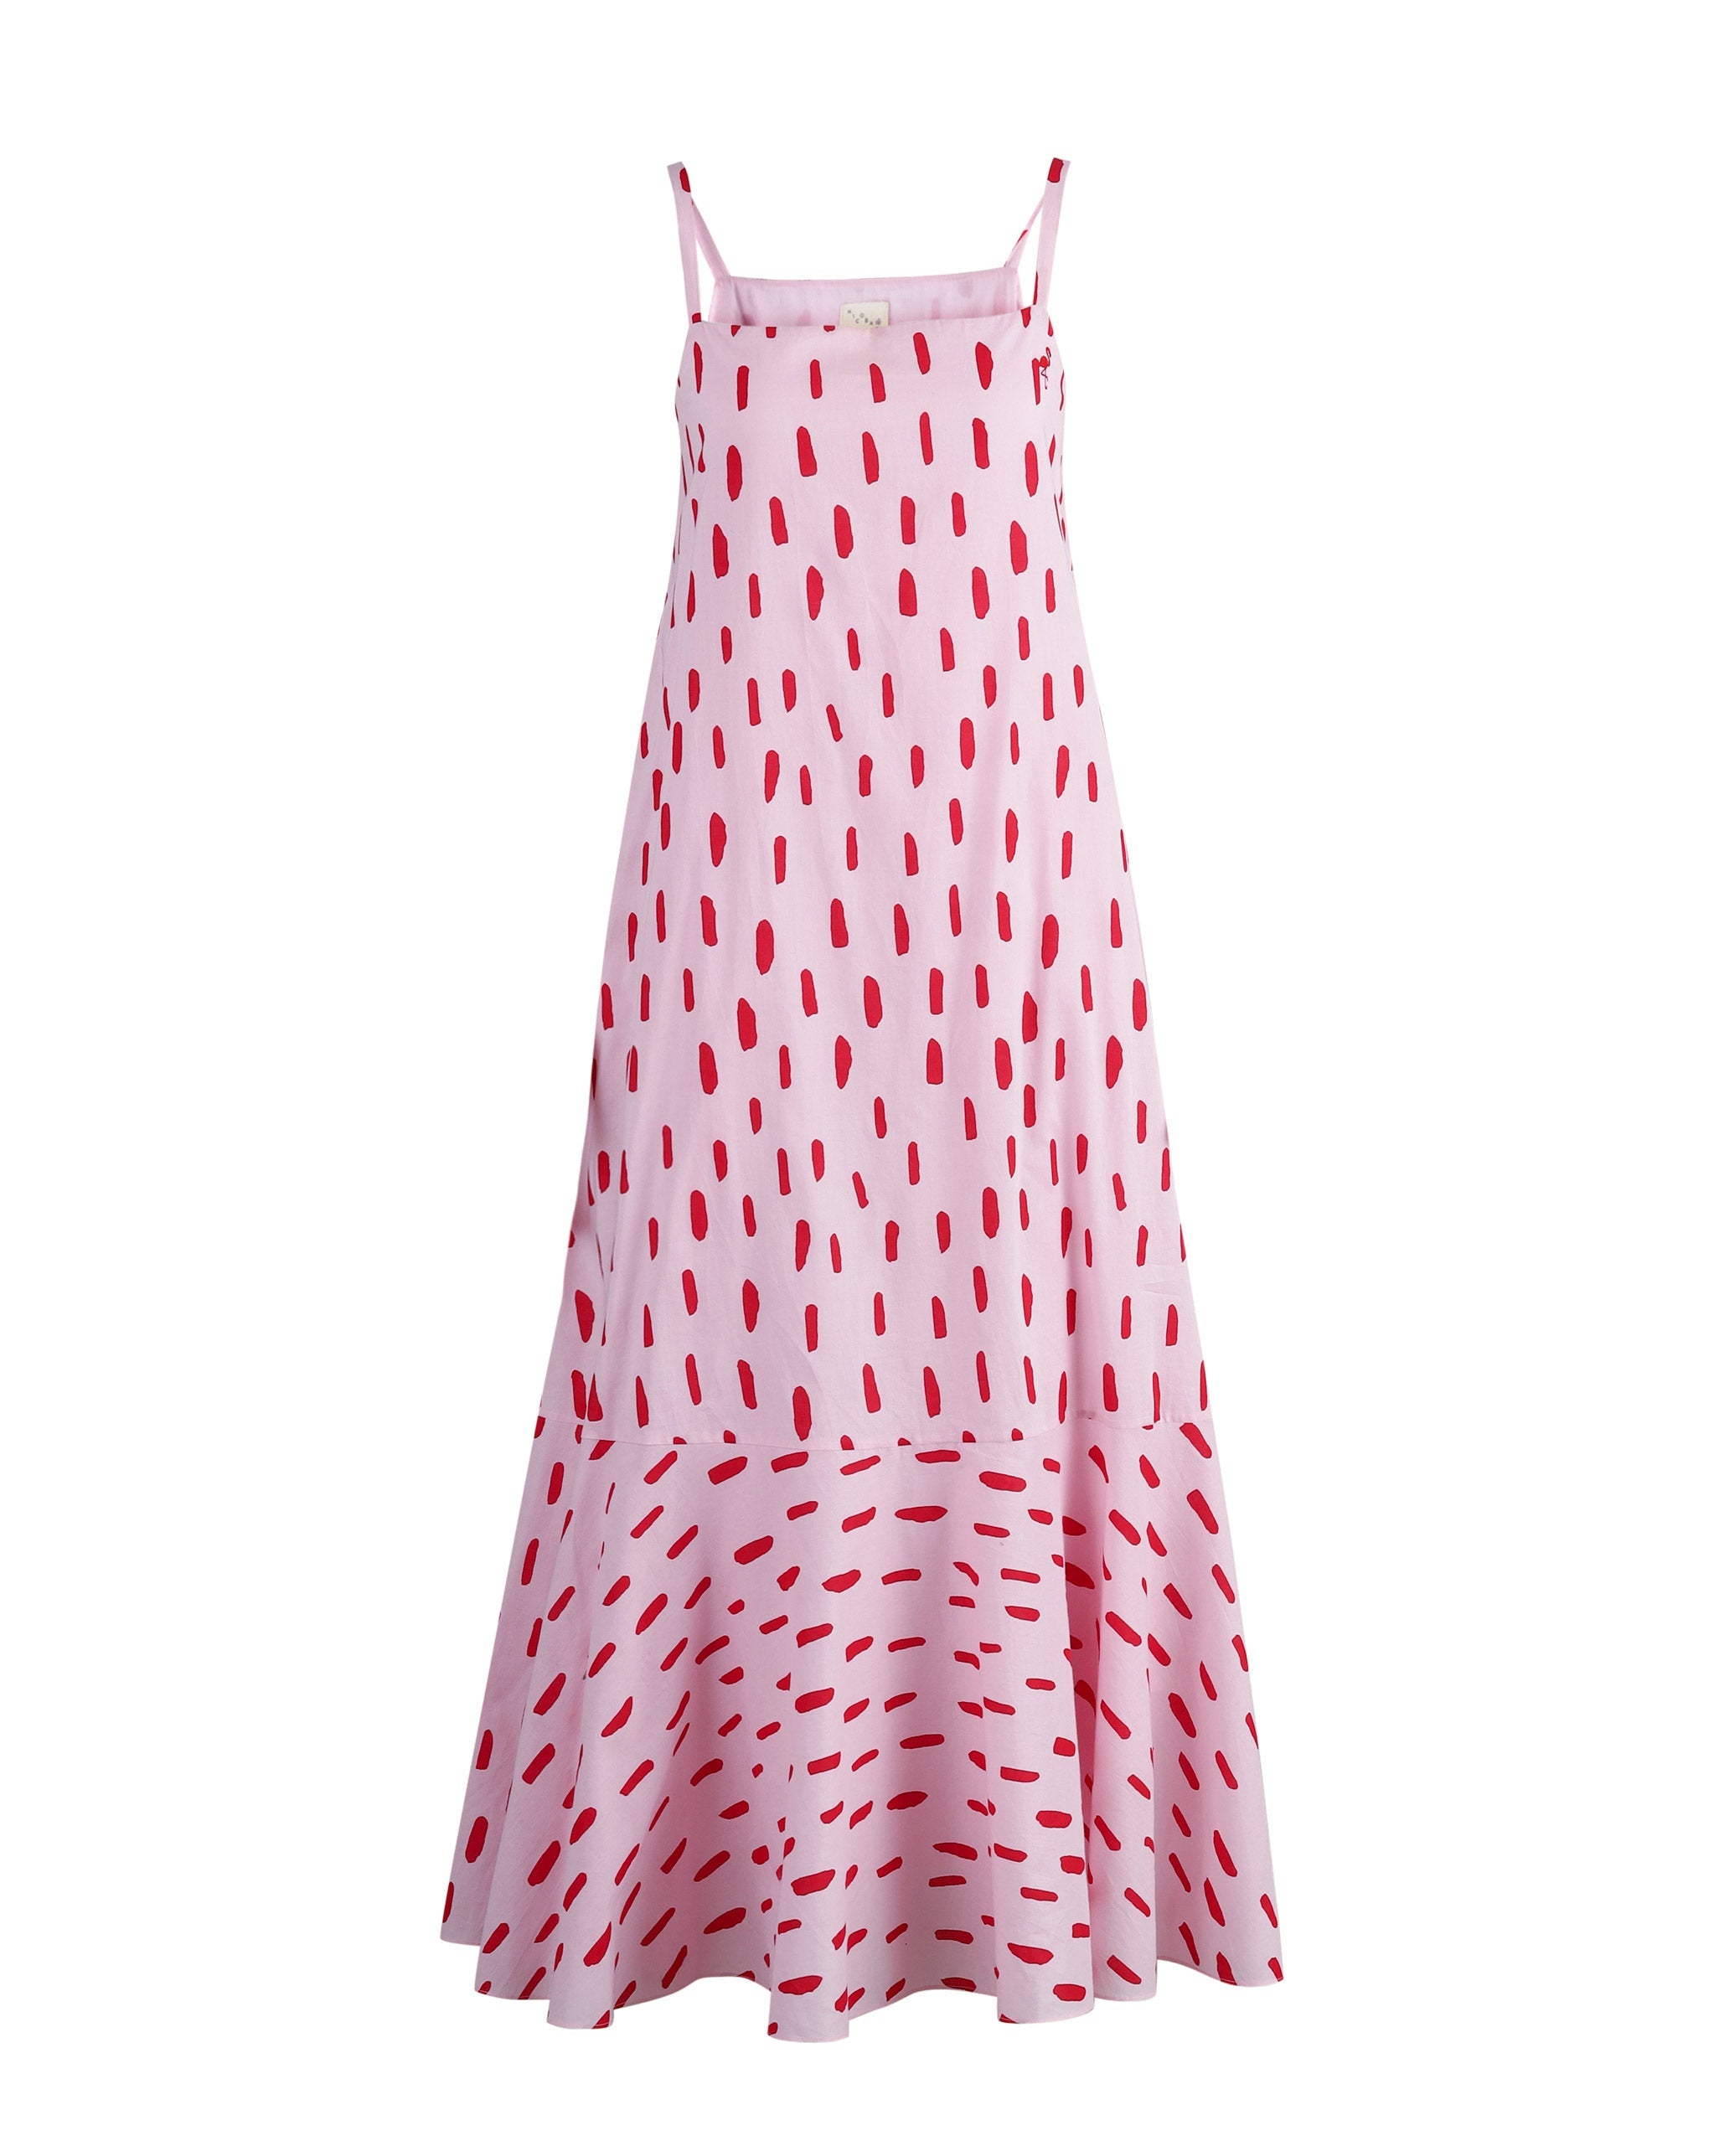 Kimsuka Dress - Pink